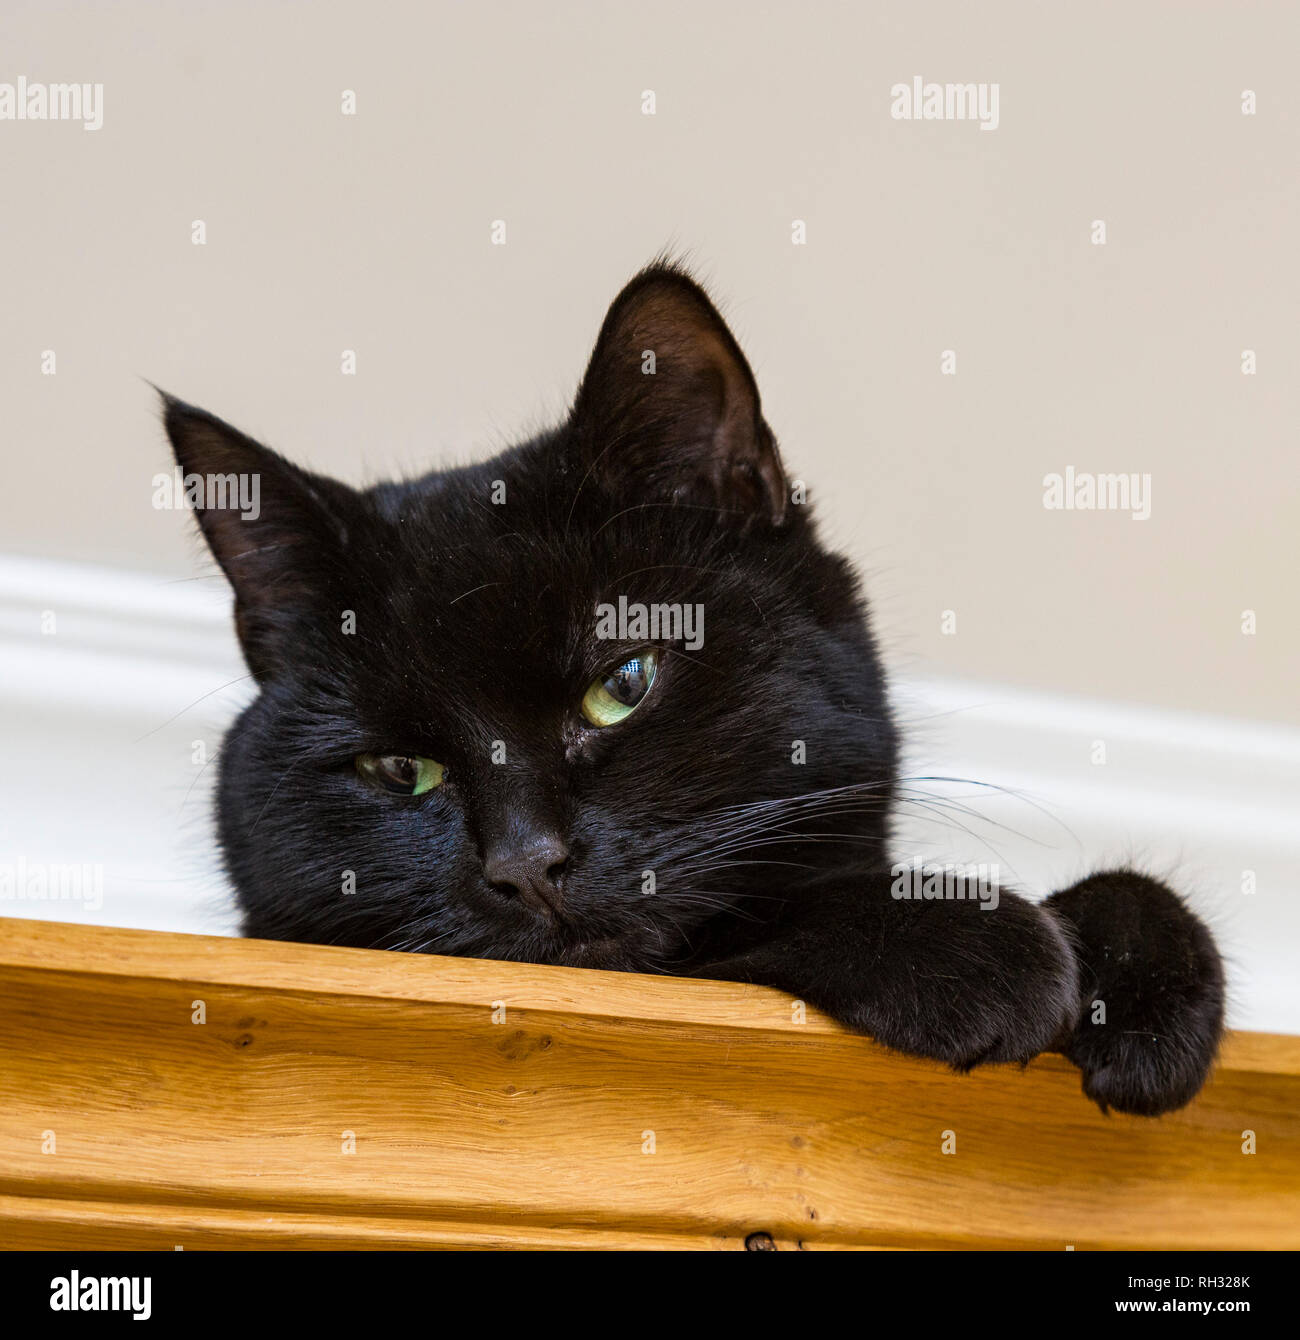 Un jeune chat noir assis sur le dessus d'une armoire en bois Banque D'Images